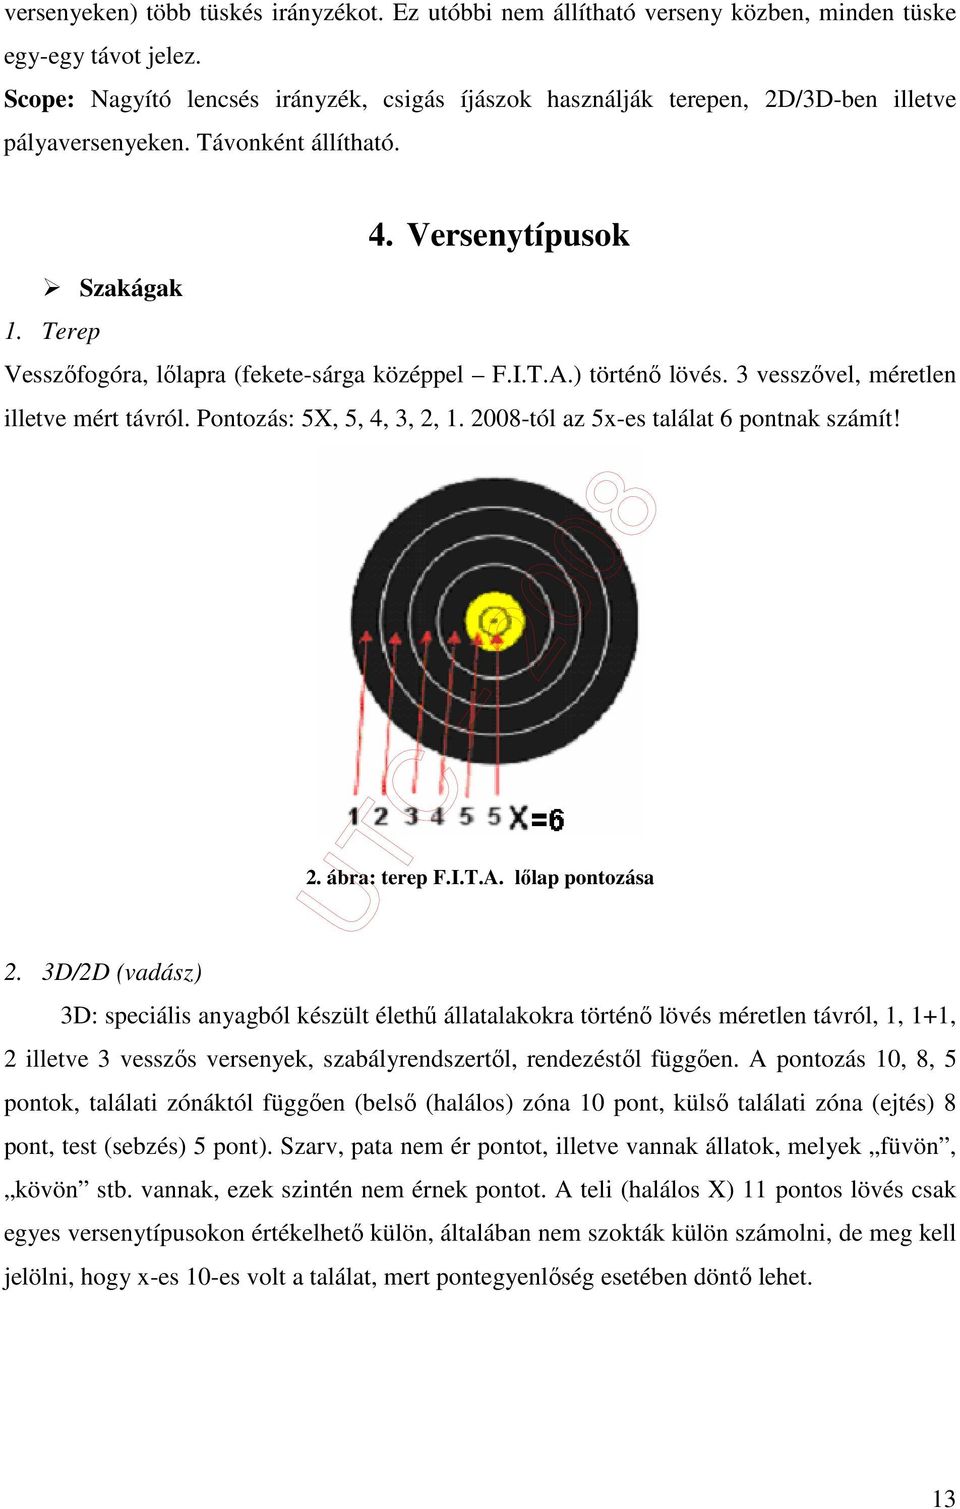 Terep Vesszıfogóra, lılapra (fekete-sárga középpel F.I.T.A.) történı lövés. 3 vesszıvel, méretlen illetve mért távról. Pontozás: 5X, 5, 4, 3, 2, 1. 2008-tól az 5x-es találat 6 pontnak számít! 2. ábra: terep F.